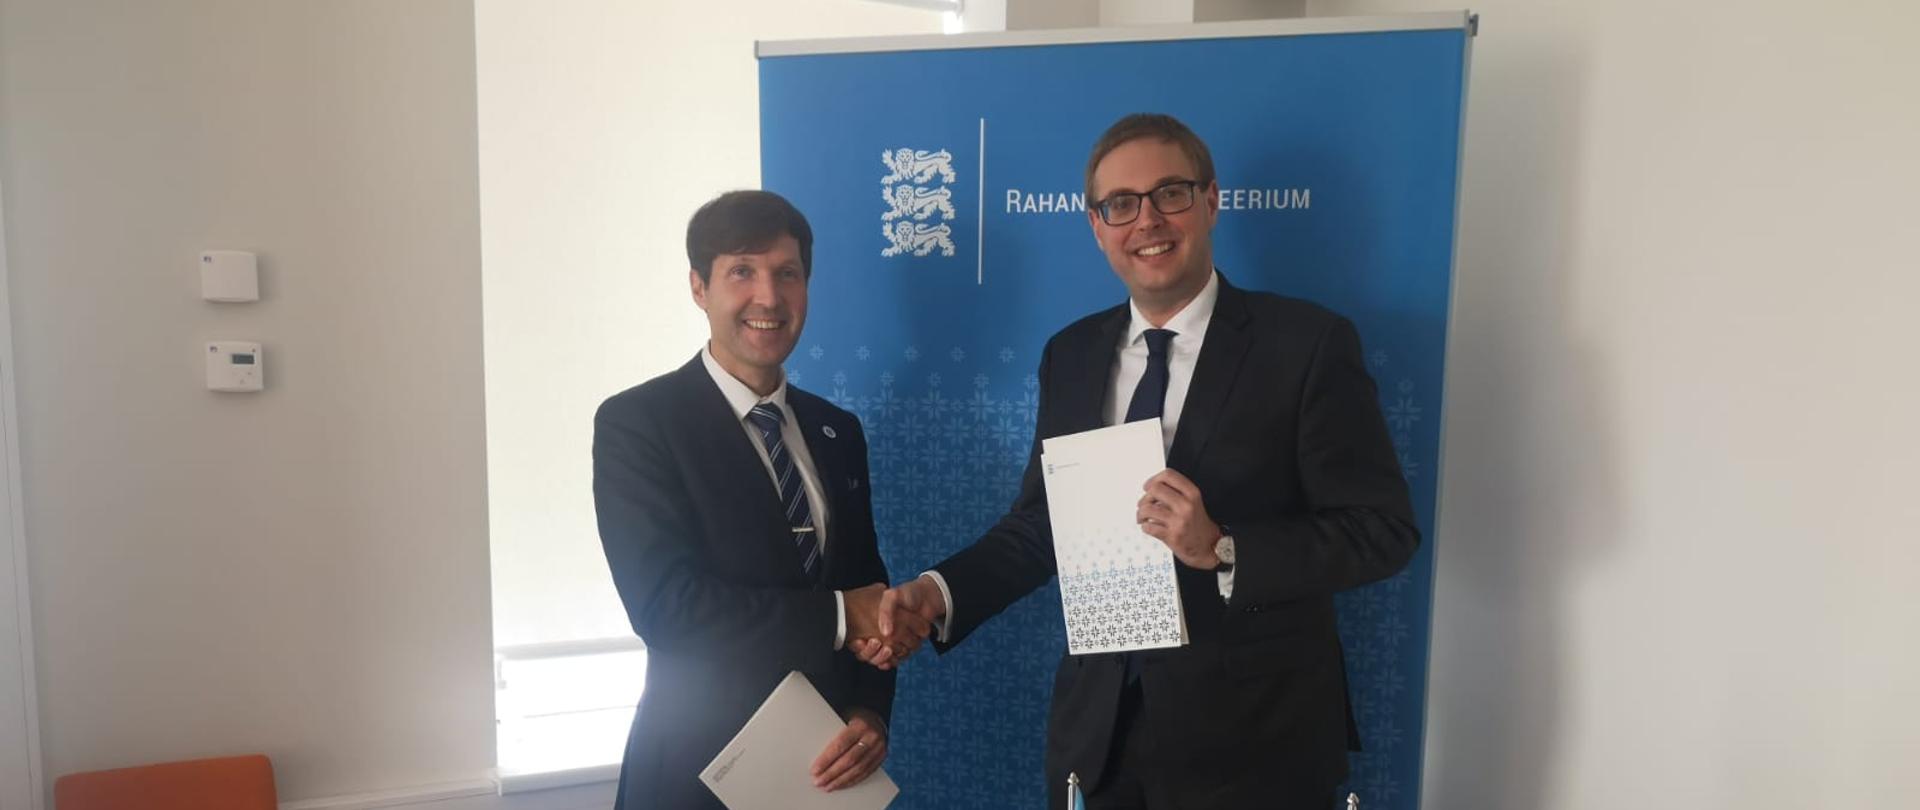 Minister Jan Sarnowski i Martin Helme podają sobie ręce po podpisaniu deklaracji o pogłębionej współpracy w walce z przestępczością podatkową i karuzelami VAT